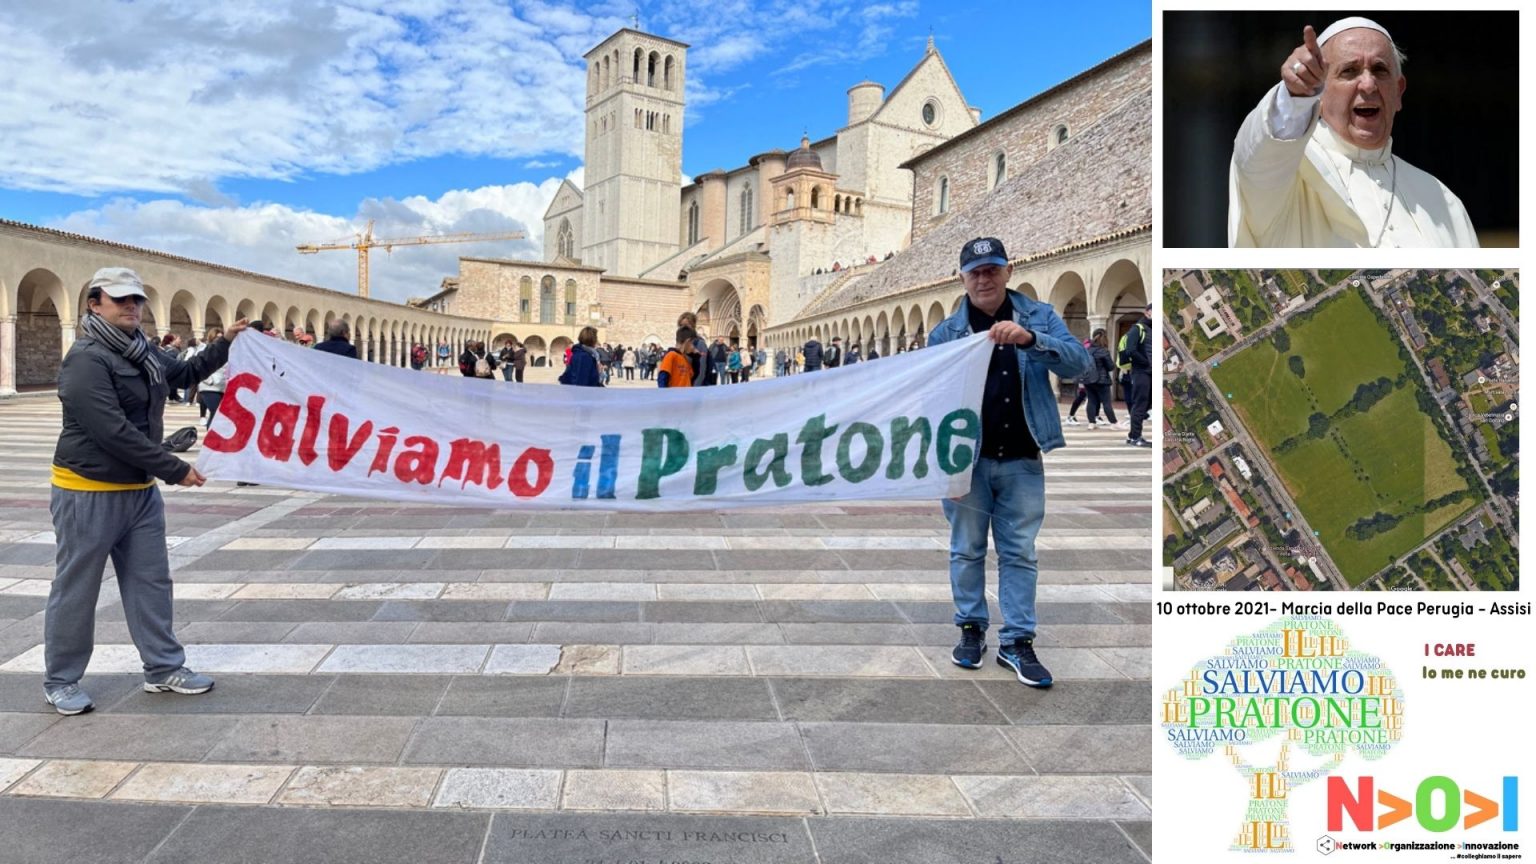 10 ottobre 2021- Marcia della Pace Perugia Assisi - Salviamo il PRATONE